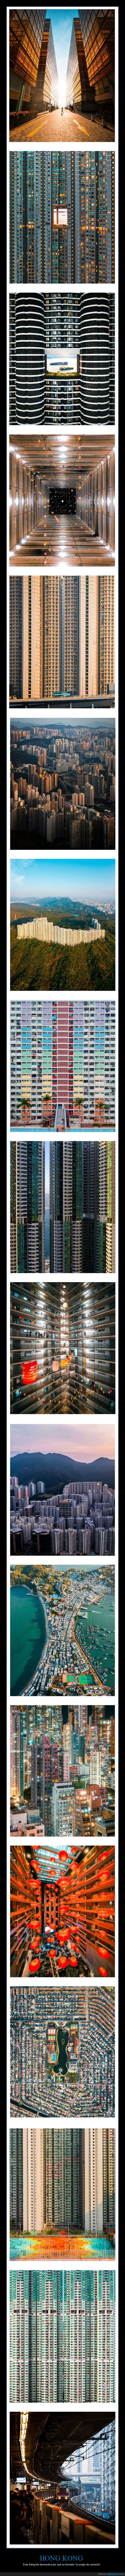 hong kong,jungla de cemento,edificios